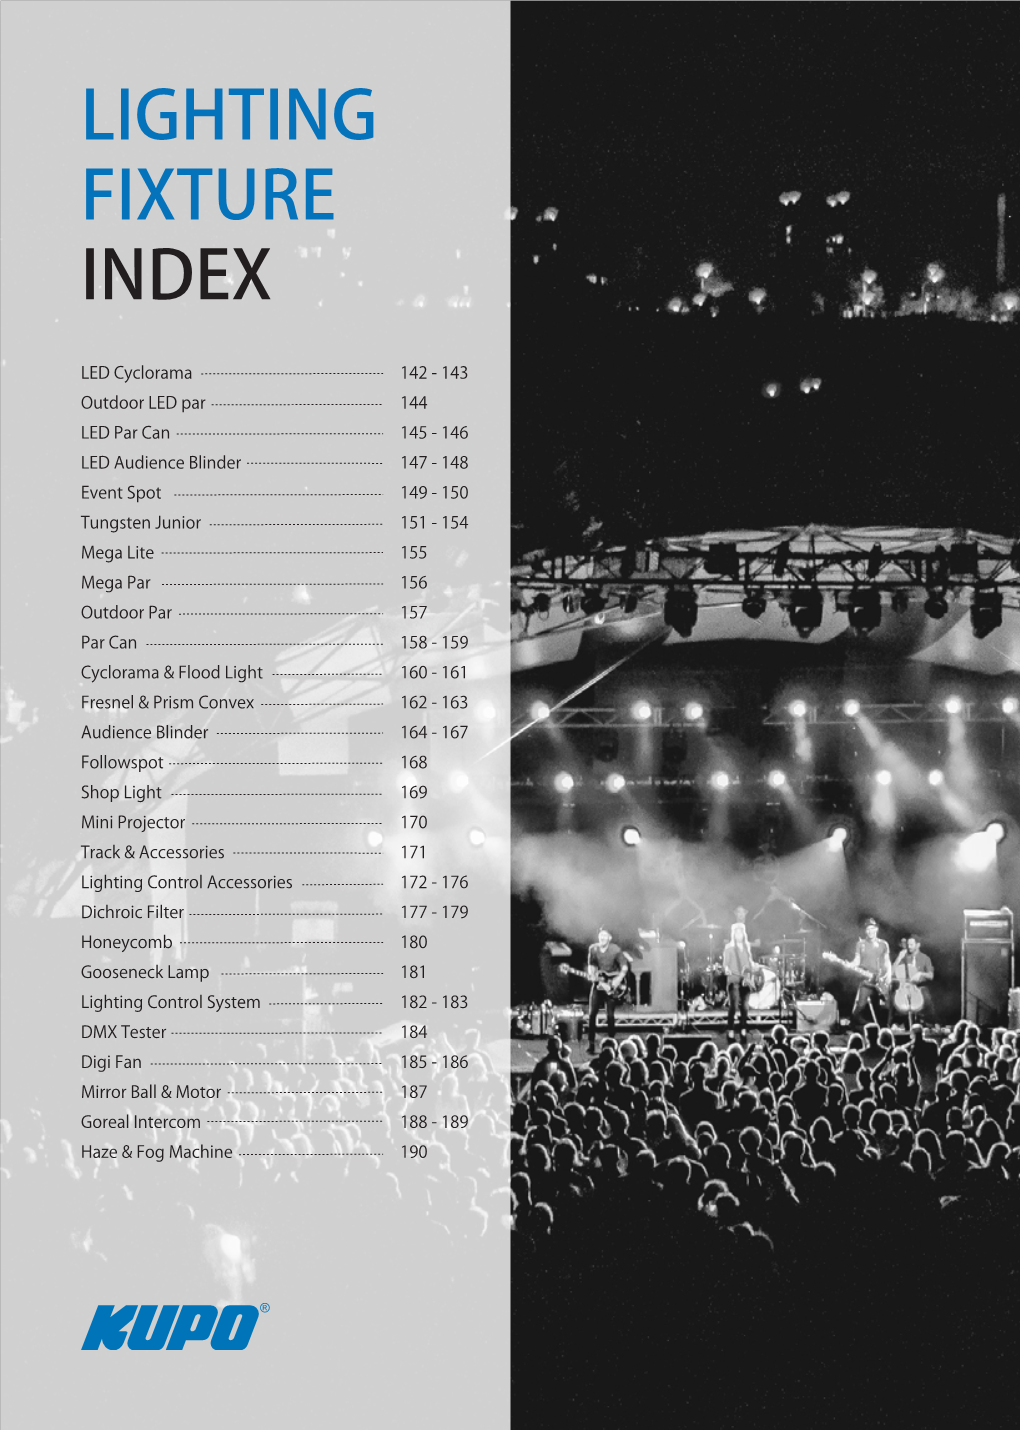 Lighting Fixture Index